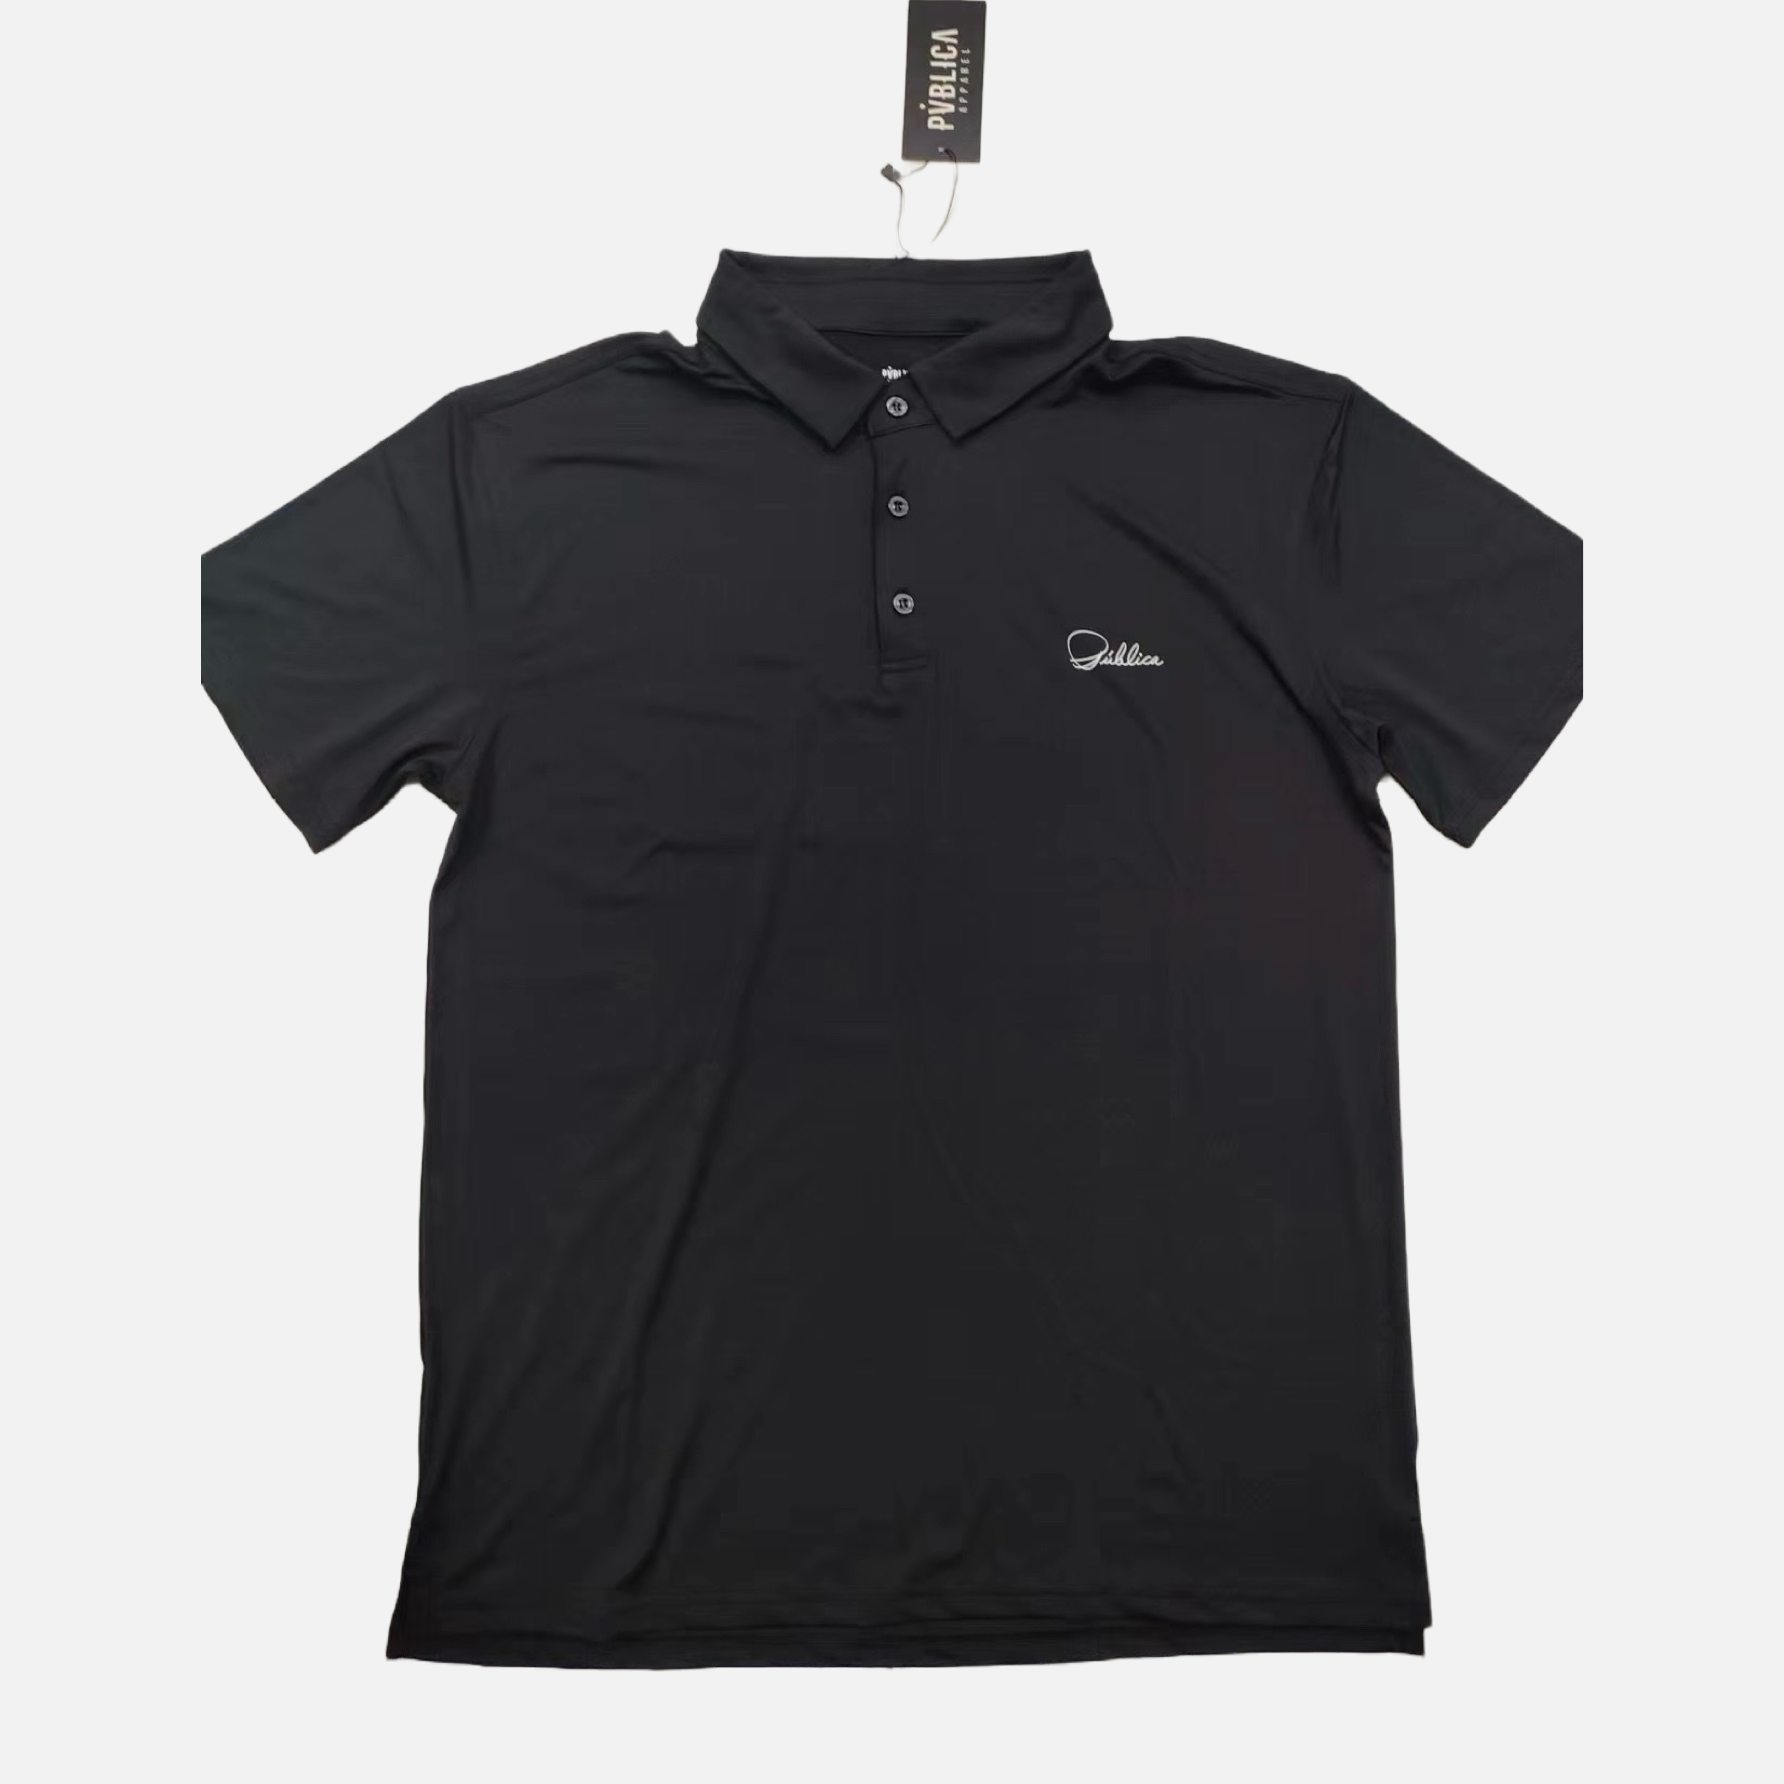 Golf Polo Shirt 'CALLIGRAPHY' MEN - BLACK